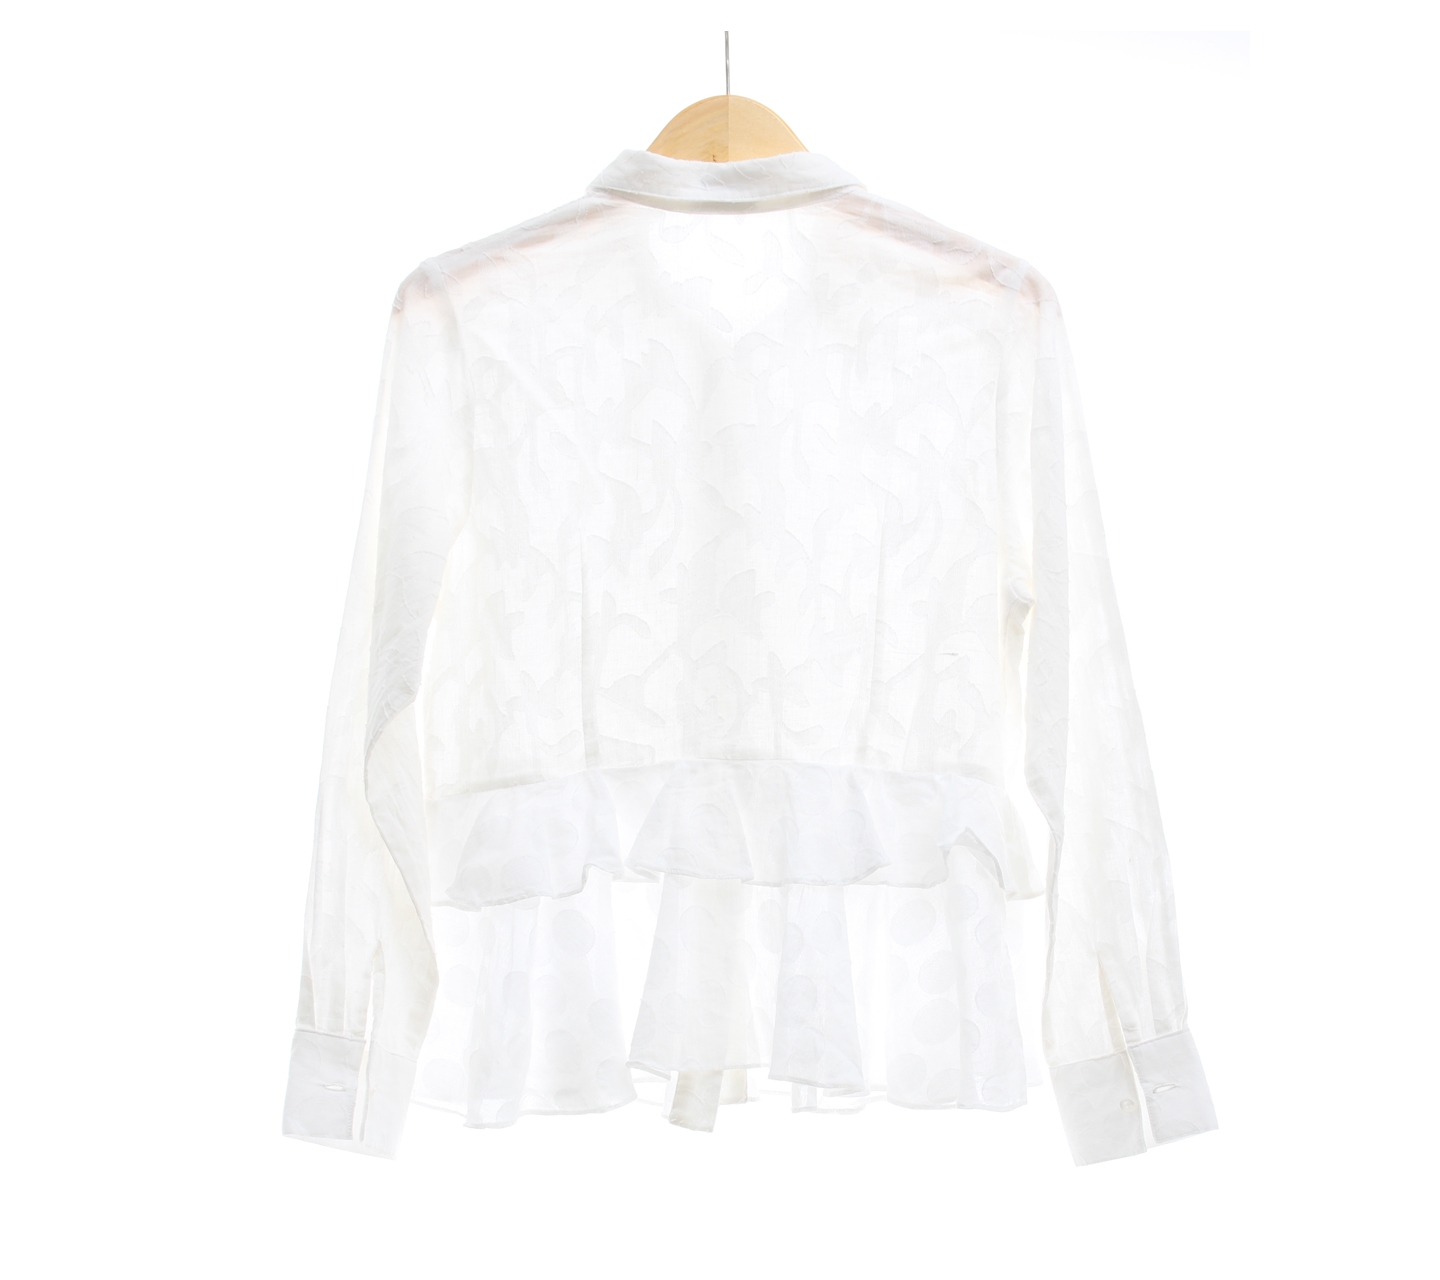 Anokhi Patterned White Shirt